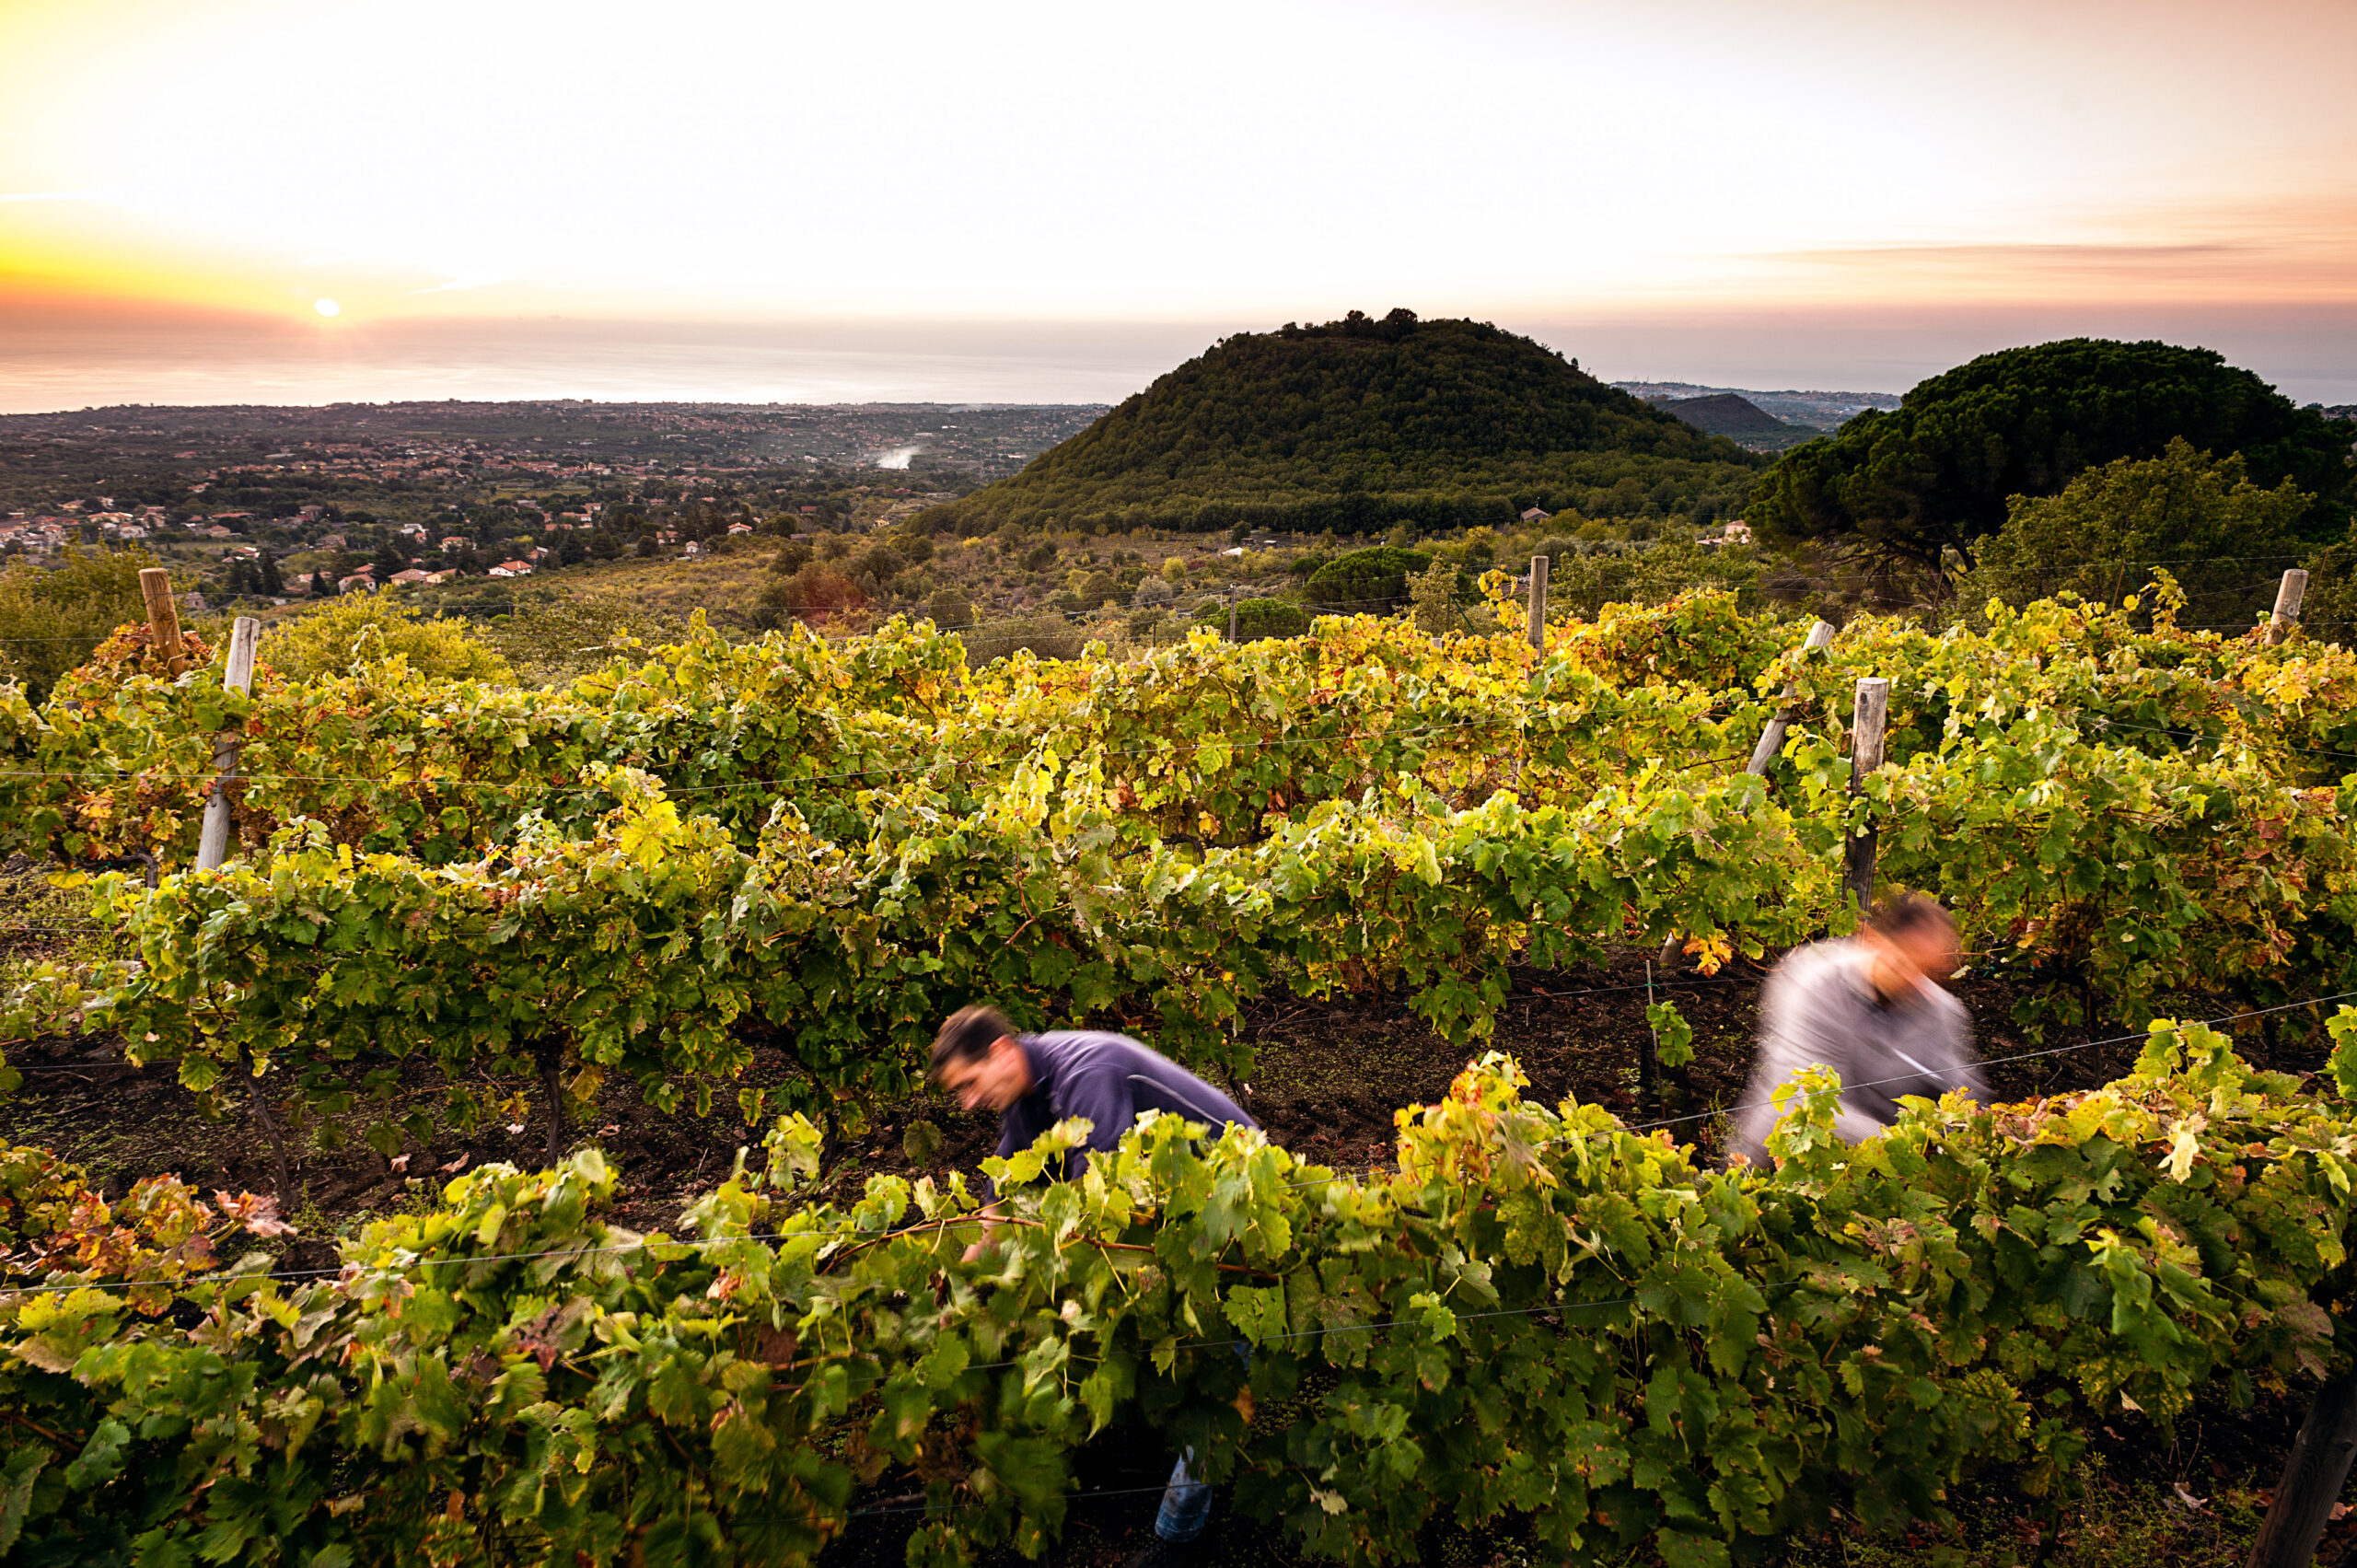 La Denominazione di Origine Controllata dei vini Etna nasce nel 1968, come la prima fondata in Sicilia e tra le prime create in Italia, foto da comunicato stampa